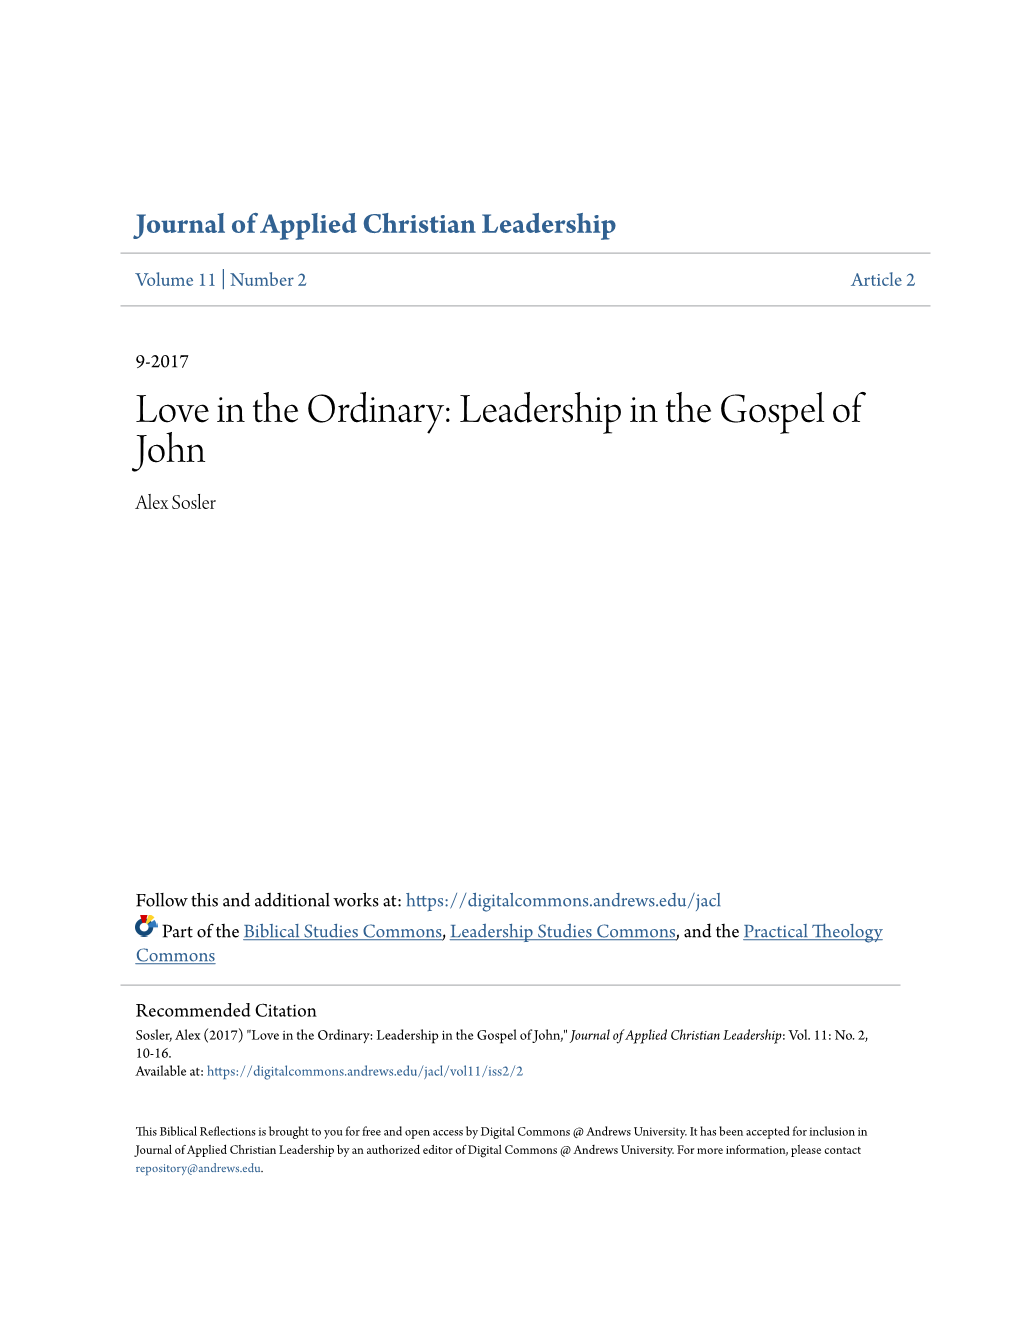 Leadership in the Gospel of John Alex Sosler